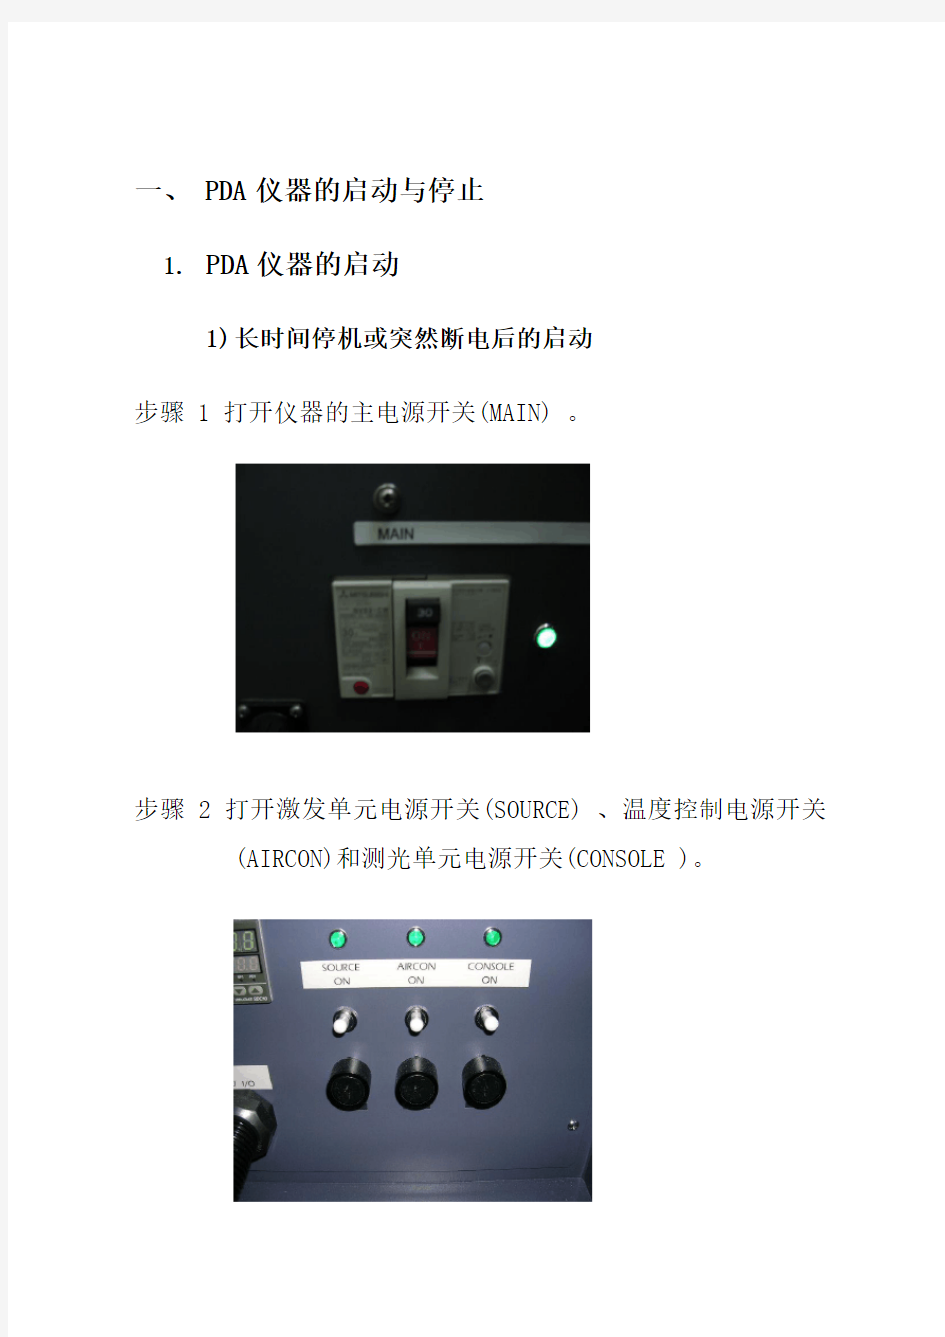 PDA仪器操作规程(光谱仪)1复习过程